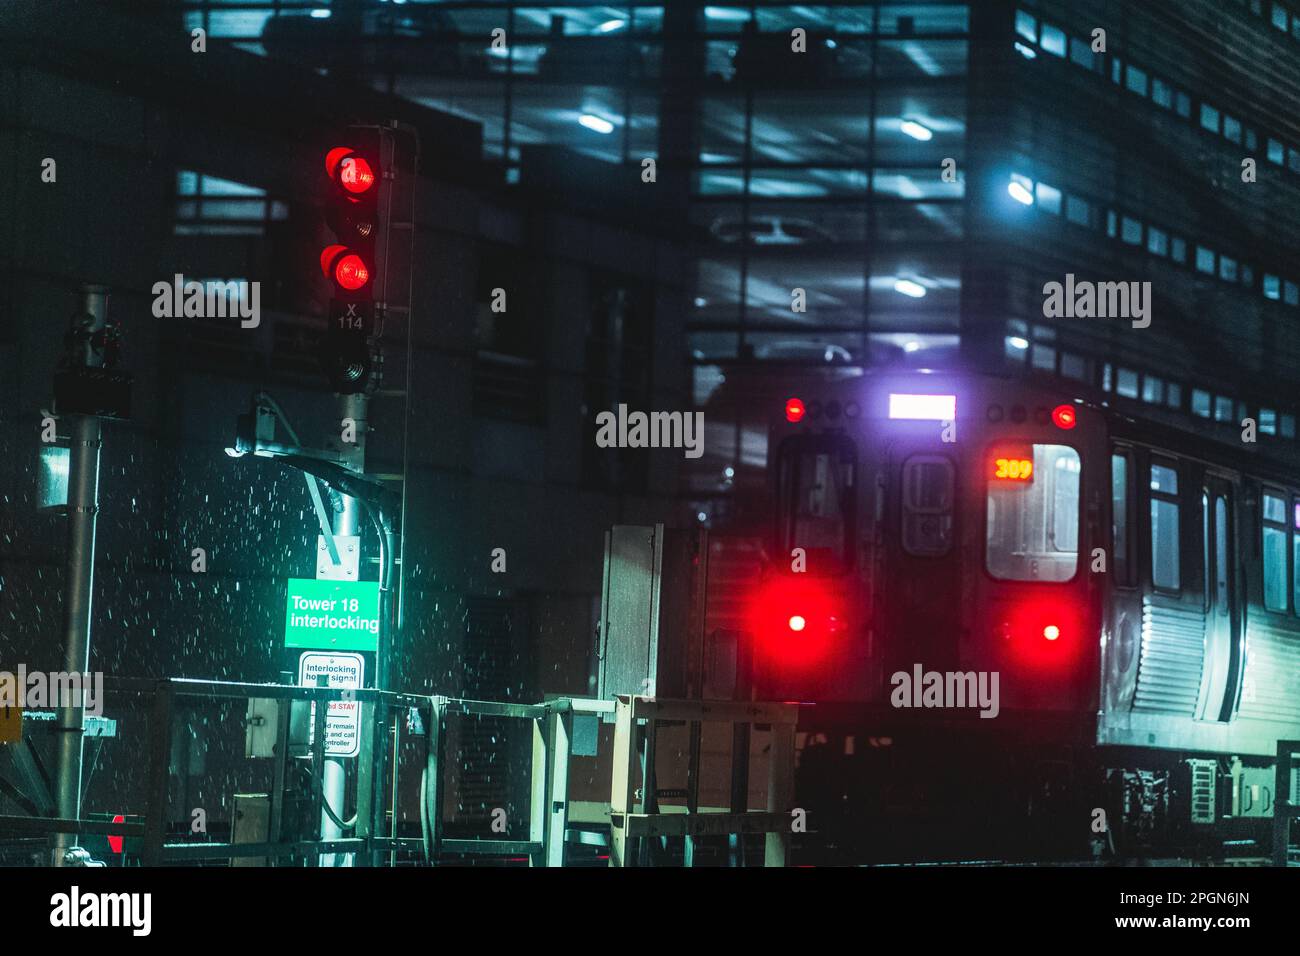 Una scena notturna poco illuminata di un treno CTA Foto Stock